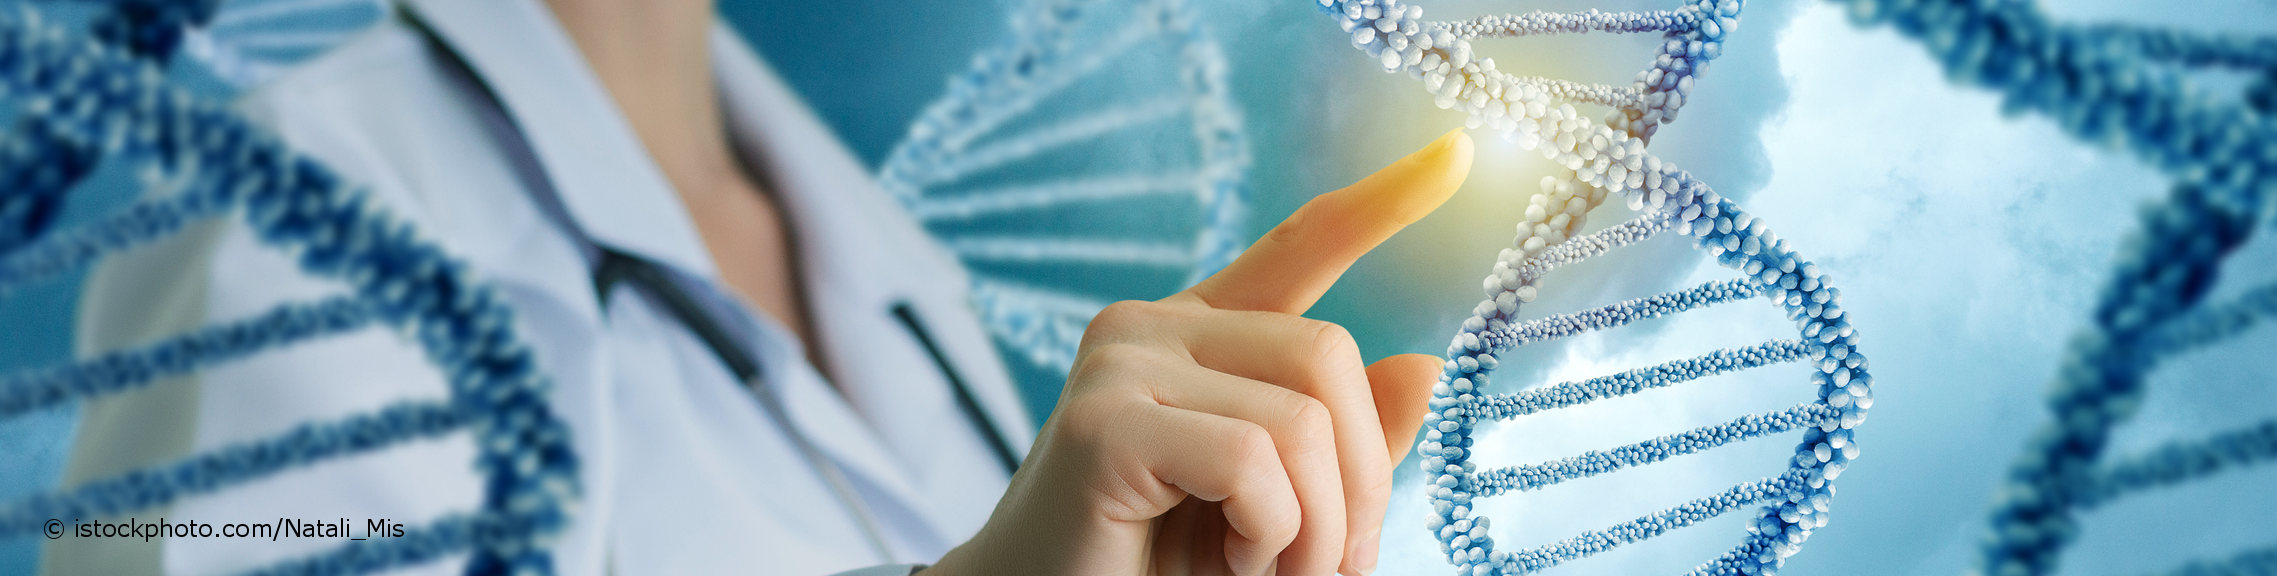 Fachärztin für Humangenetik zeigt auf ein Modell der DNA (Desoxyribonukleinsäure).